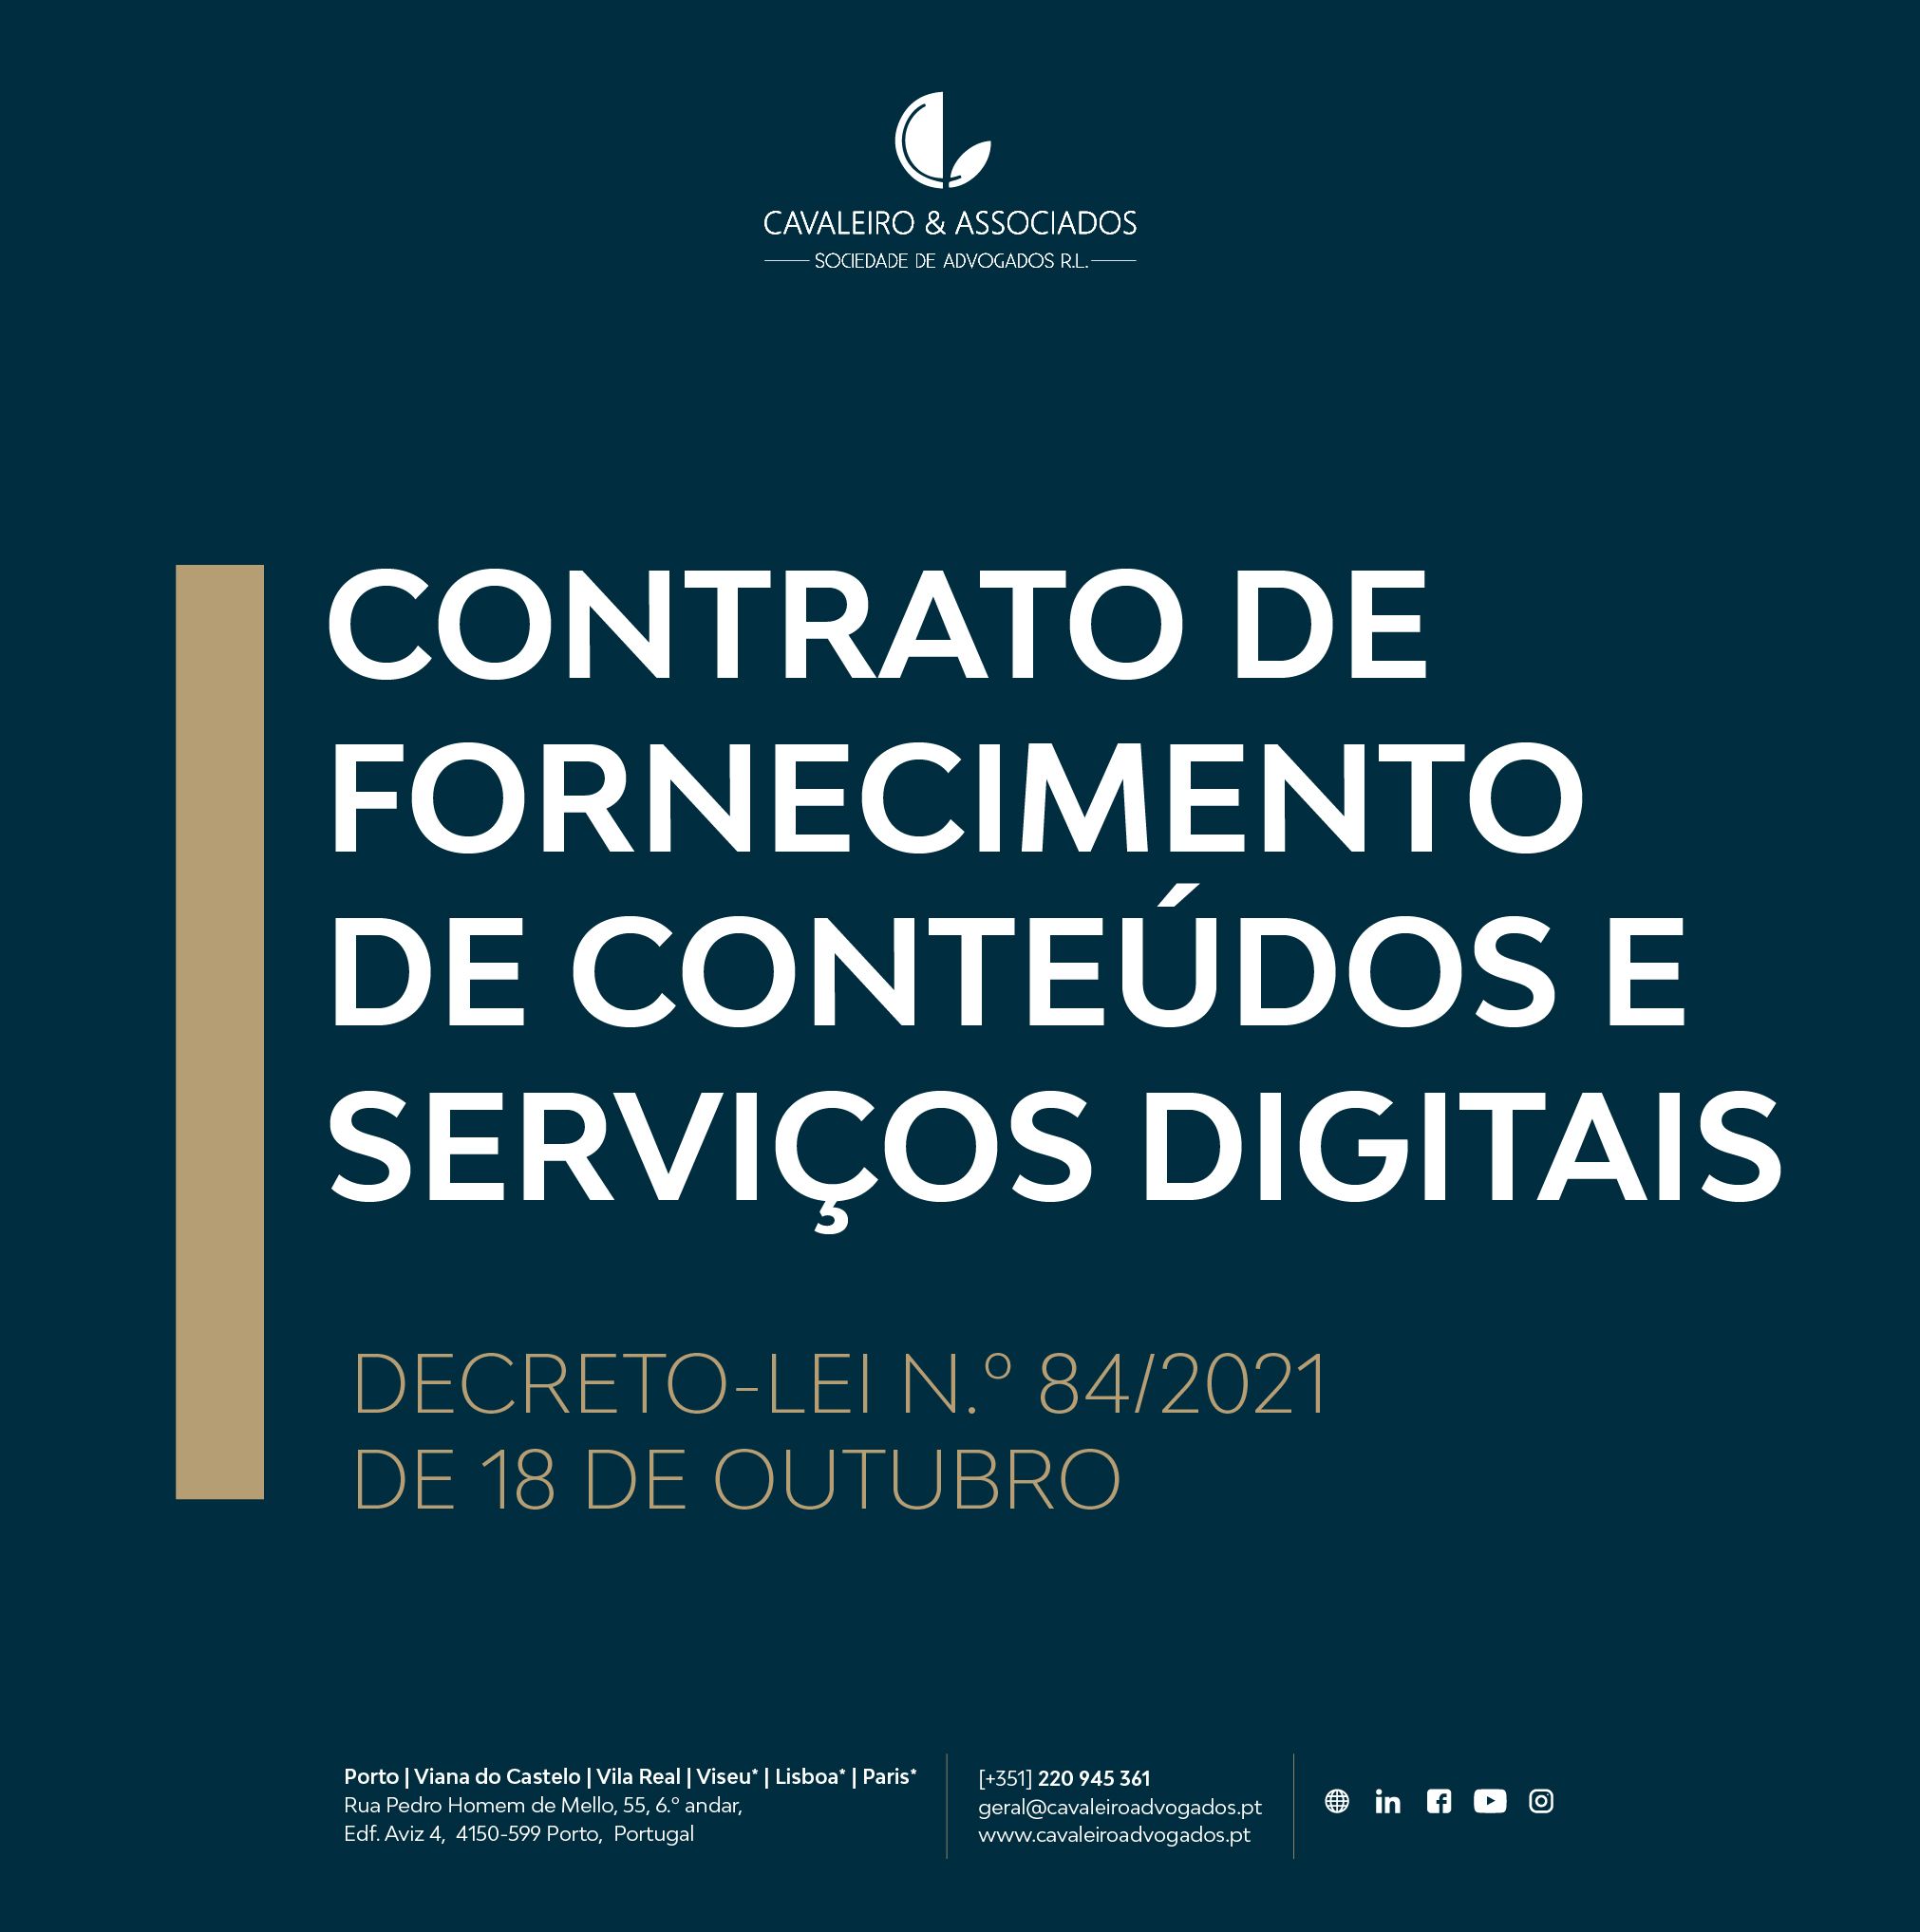 CONTRATO DE FORNECIMENTO DE CONTEÚDOS E SERVIÇOS DIGITAIS | DECRETO-LEI N.º 84/2021, DE 18 DE OUTUBRO